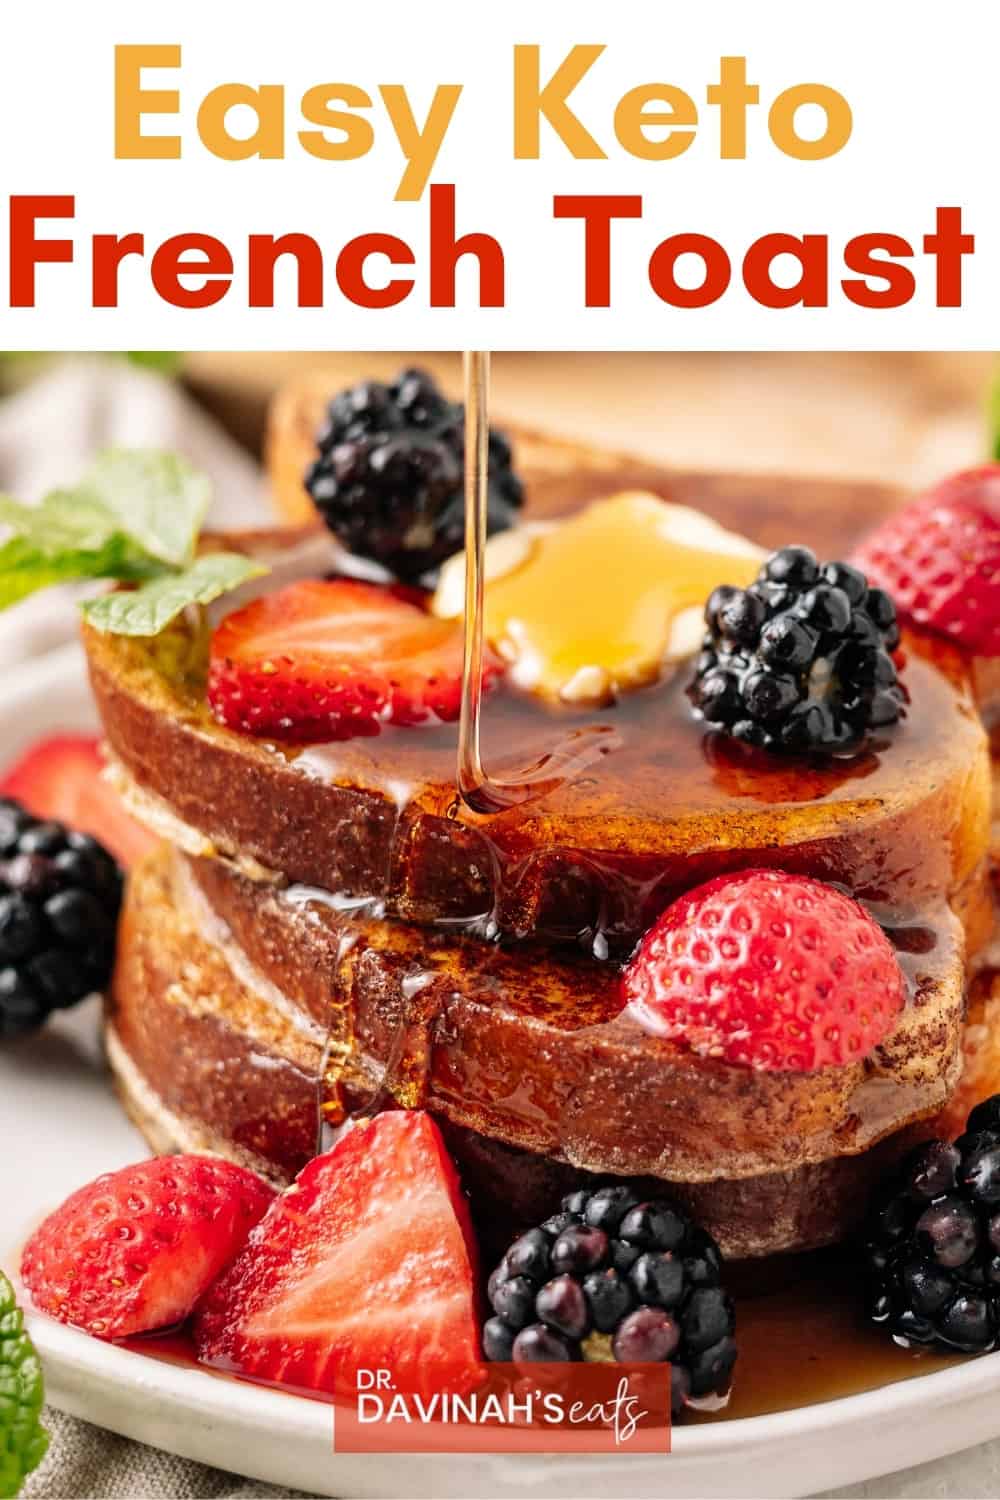 Keto French Toast Recipe - Dr. Davinah's Eats